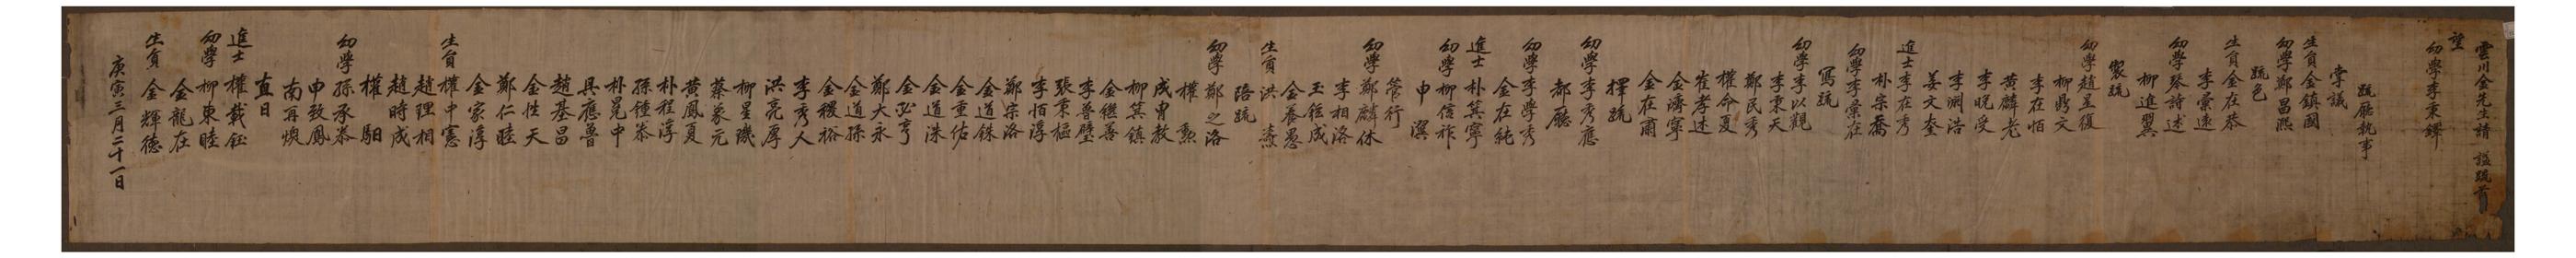 1830년에 의성김씨 김용의 시호를 청하기 위해 작성한 소임록